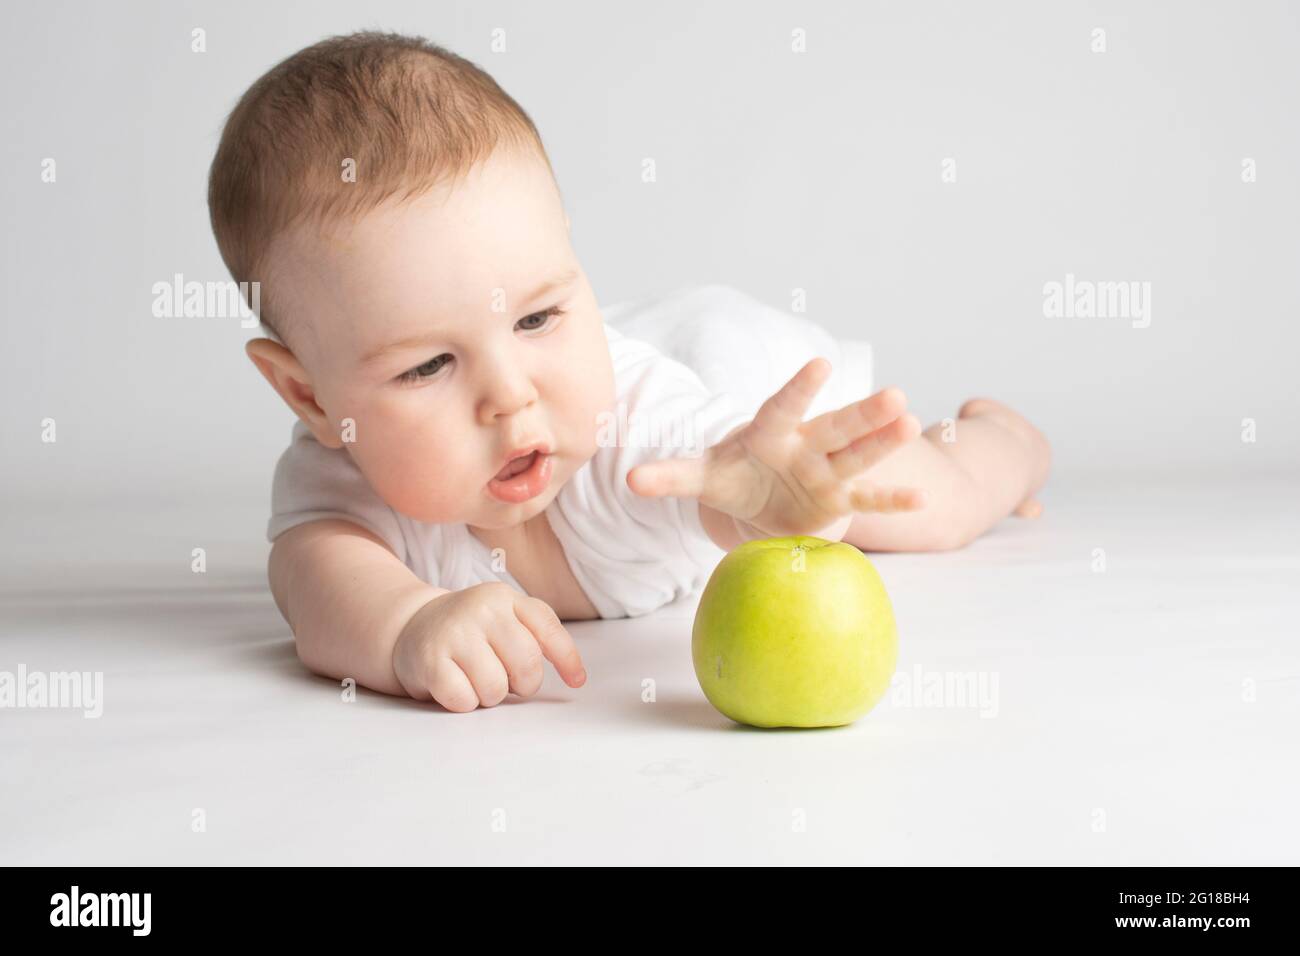 Das Kind greift nach einem grünen Apfel Stockfoto